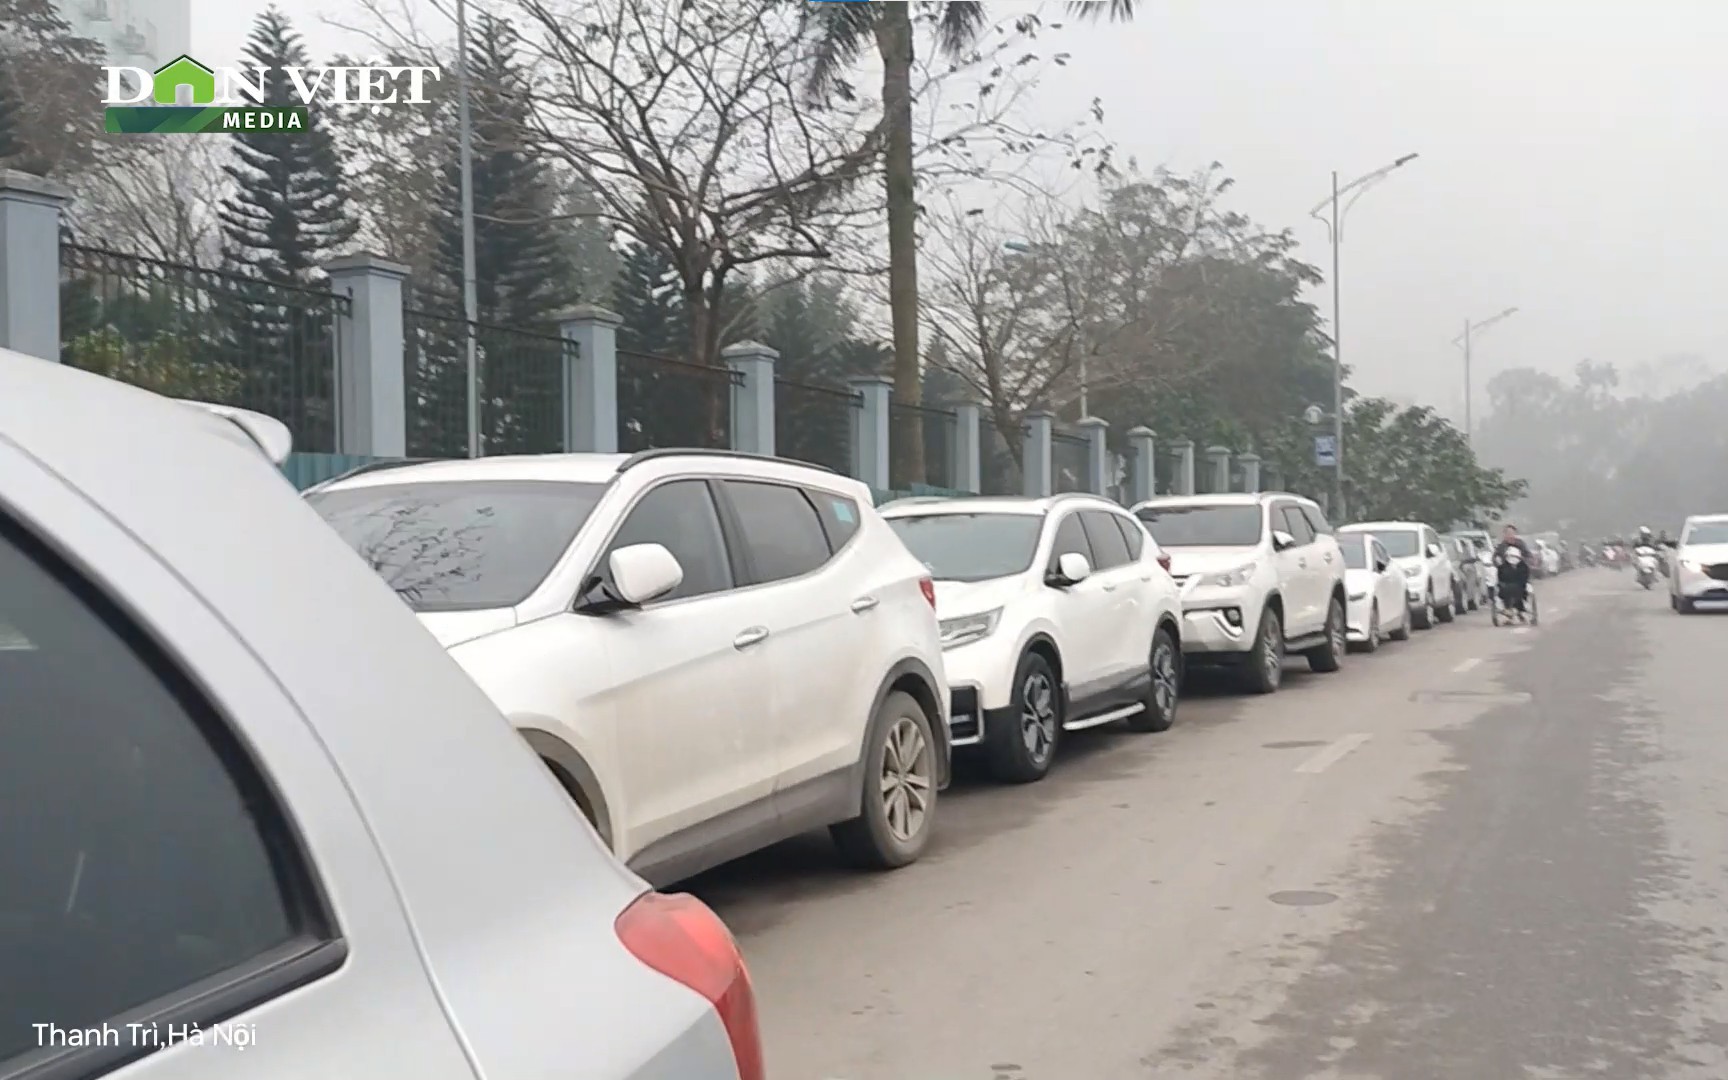 Các điểm trông giữ xe quanh Bệnh viện K Tân Triều ngang nhiên “chặt chém” người nhà bệnh nhân